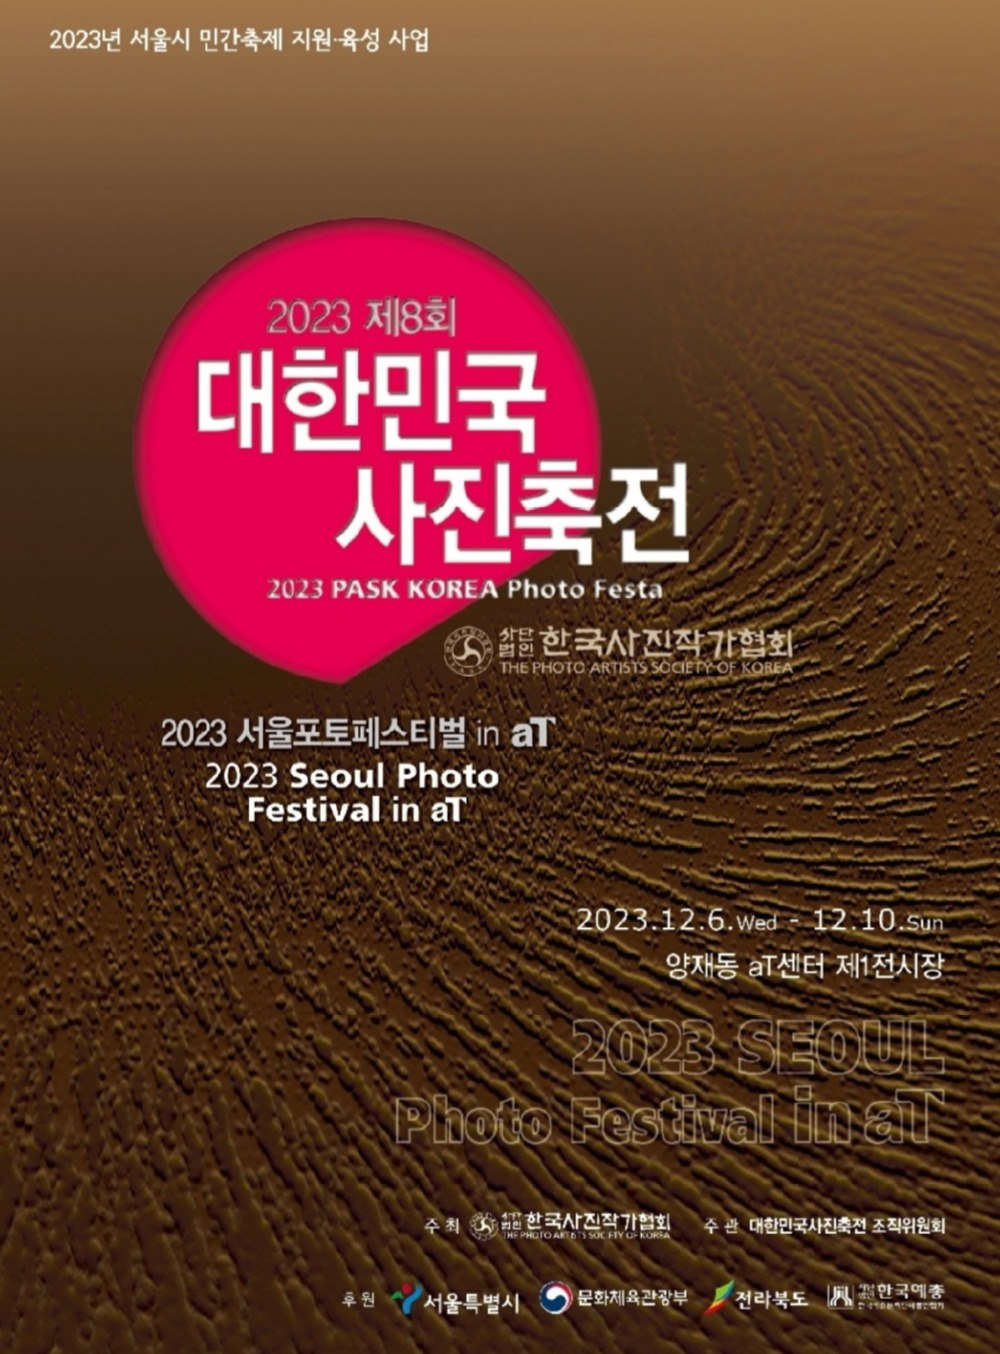 제8회 대한민국 사진축전이 개최된다.